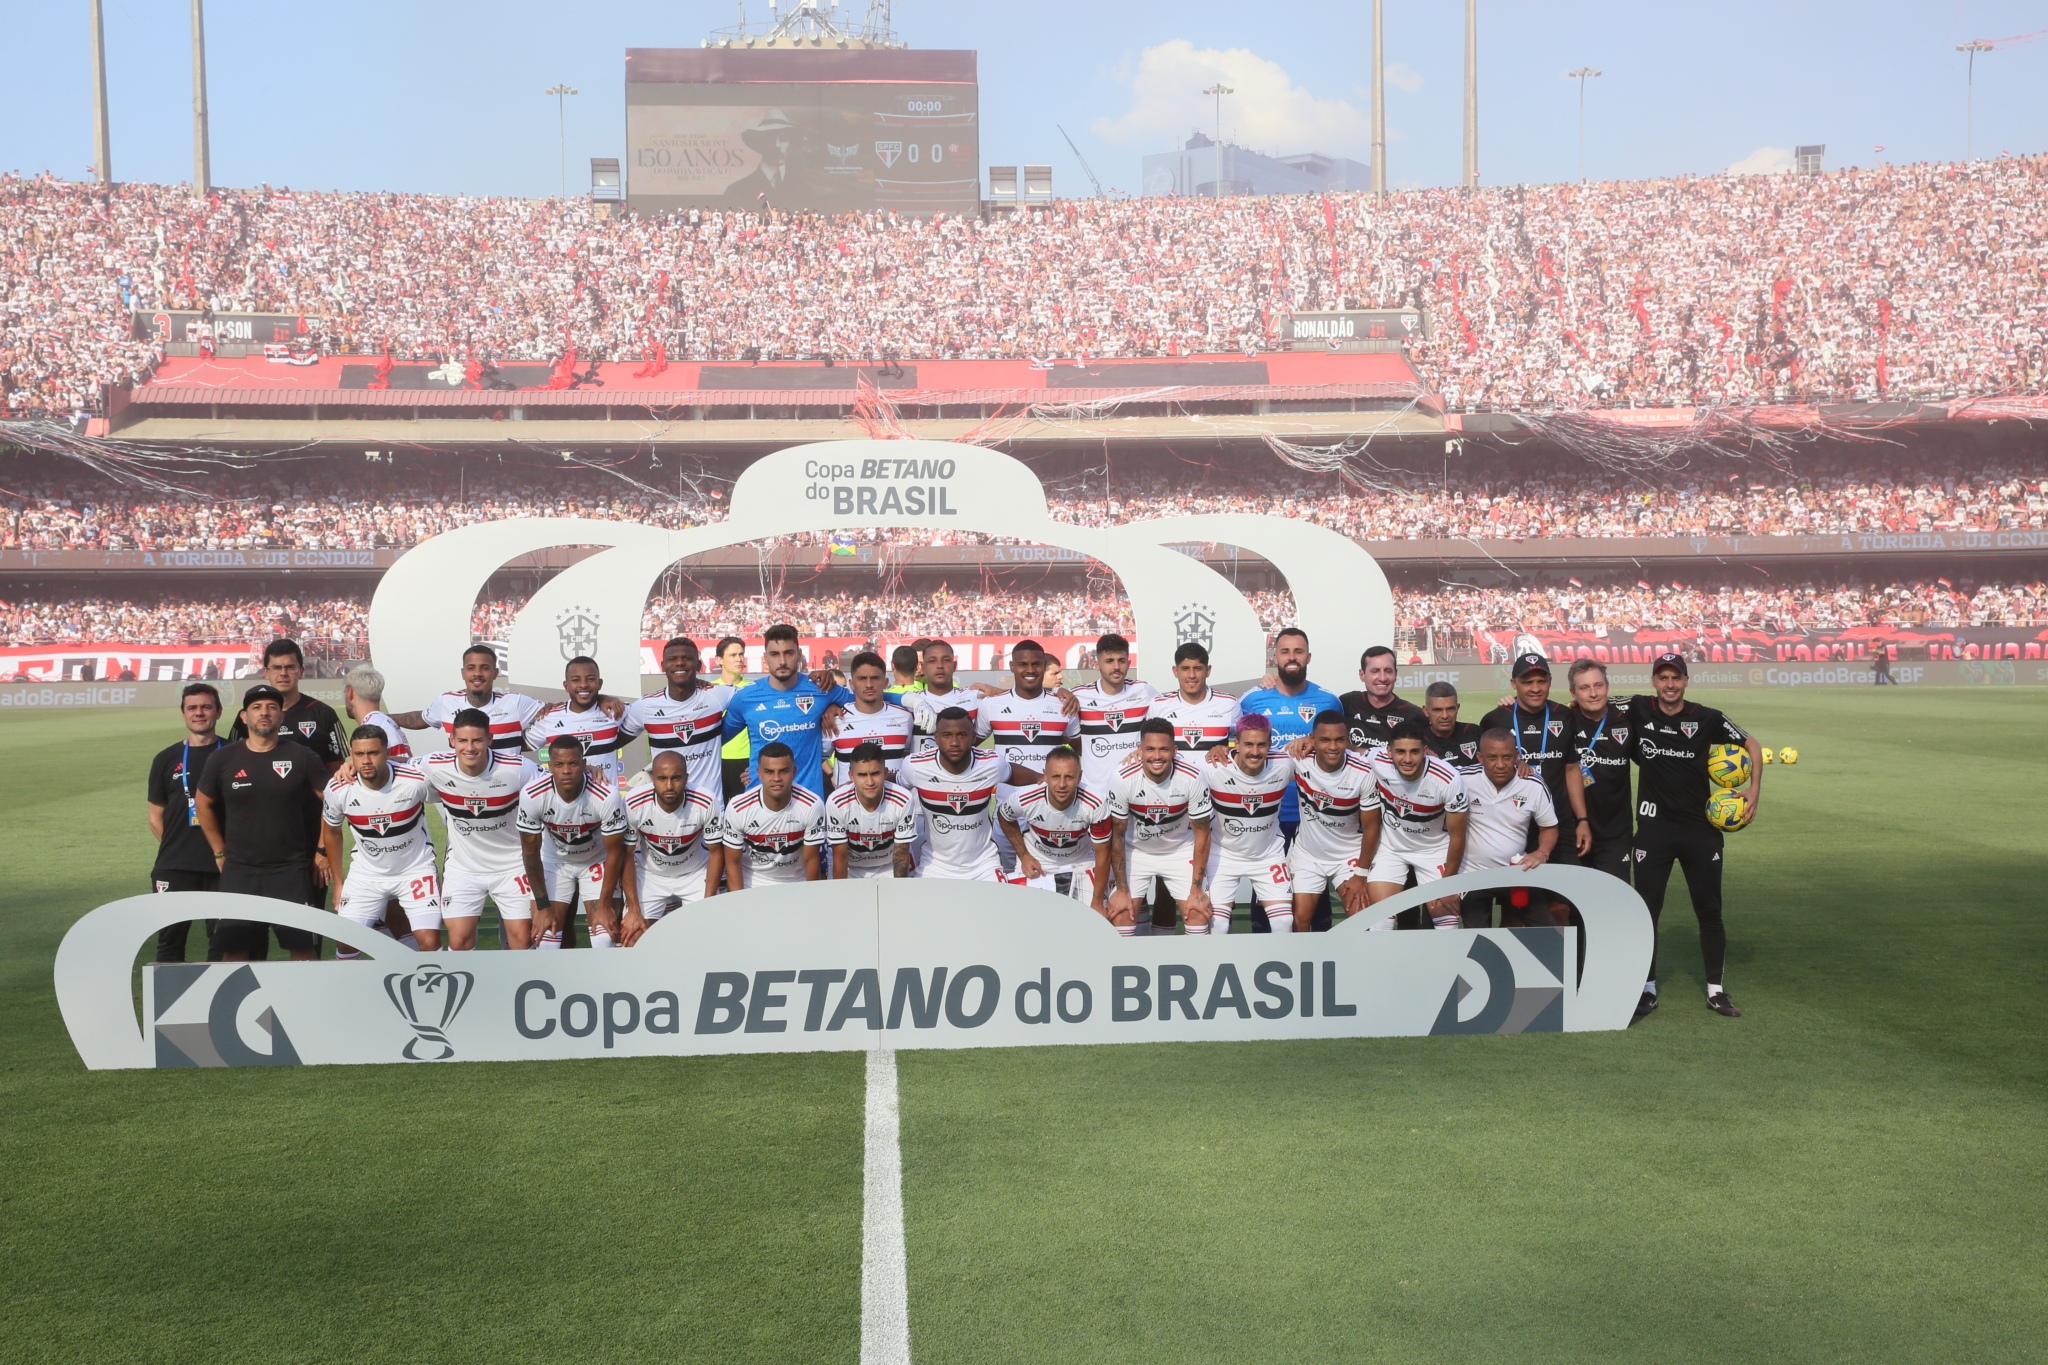 Sorteio da Copa do Brasil 2023: veja os jogos da primeira fase - Placar - O  futebol sem barreiras para você